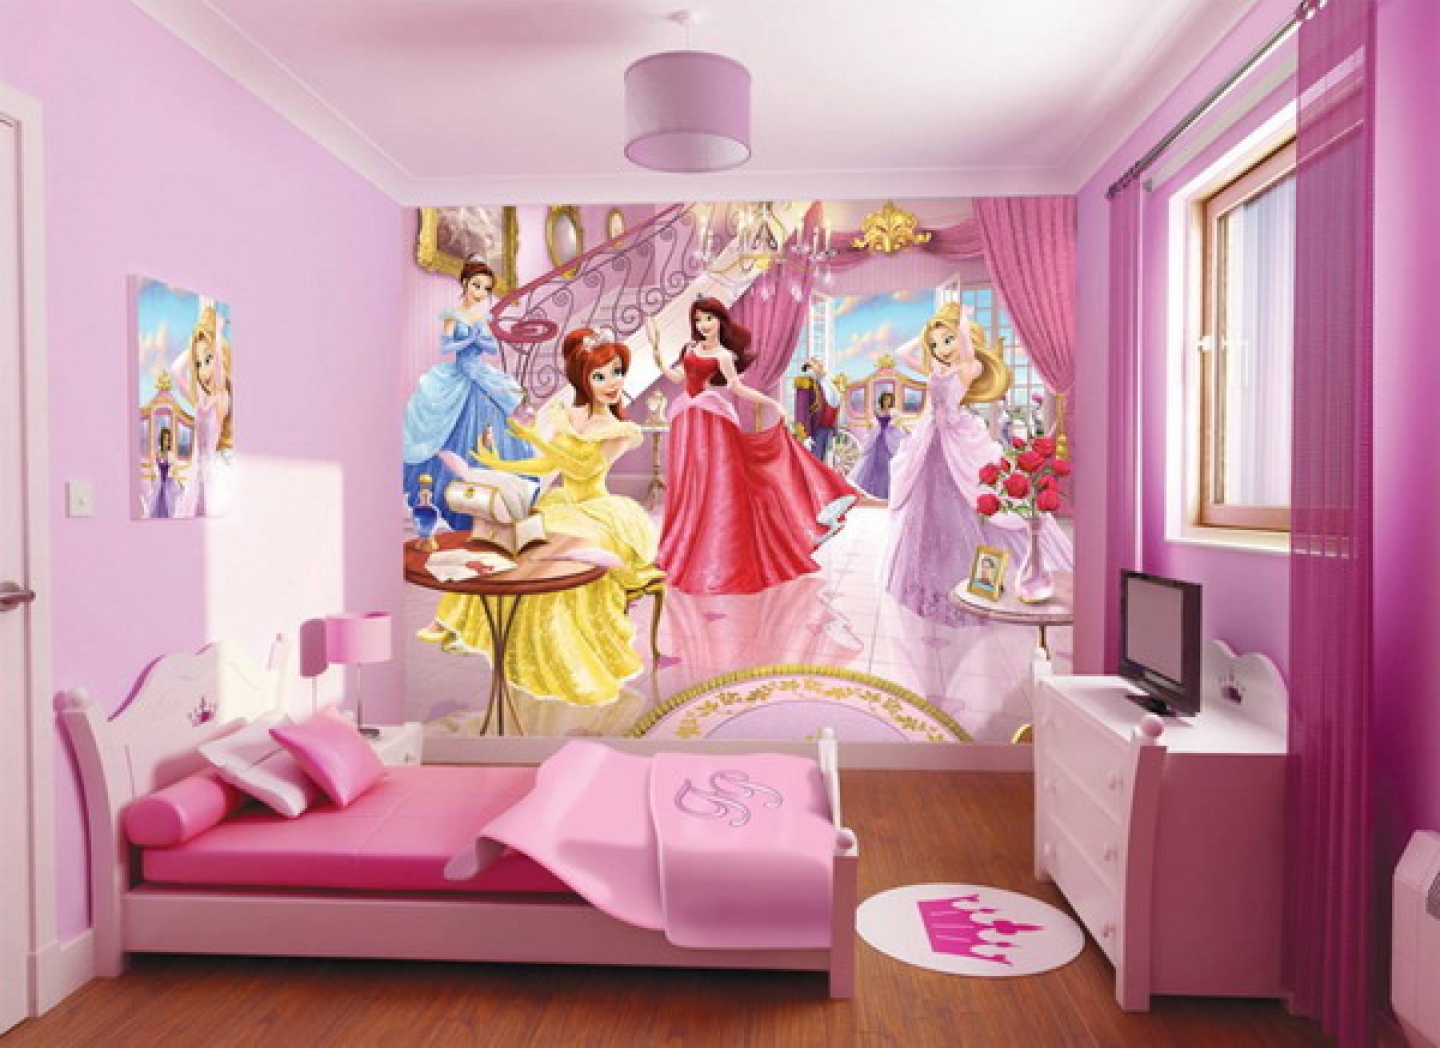 Картинки детских обоев. Комната для девочки принцессы Диснея. Комната в стиле принцессы Диснея. Детские спальни для девочек. Интерьер детской комнаты девочке.